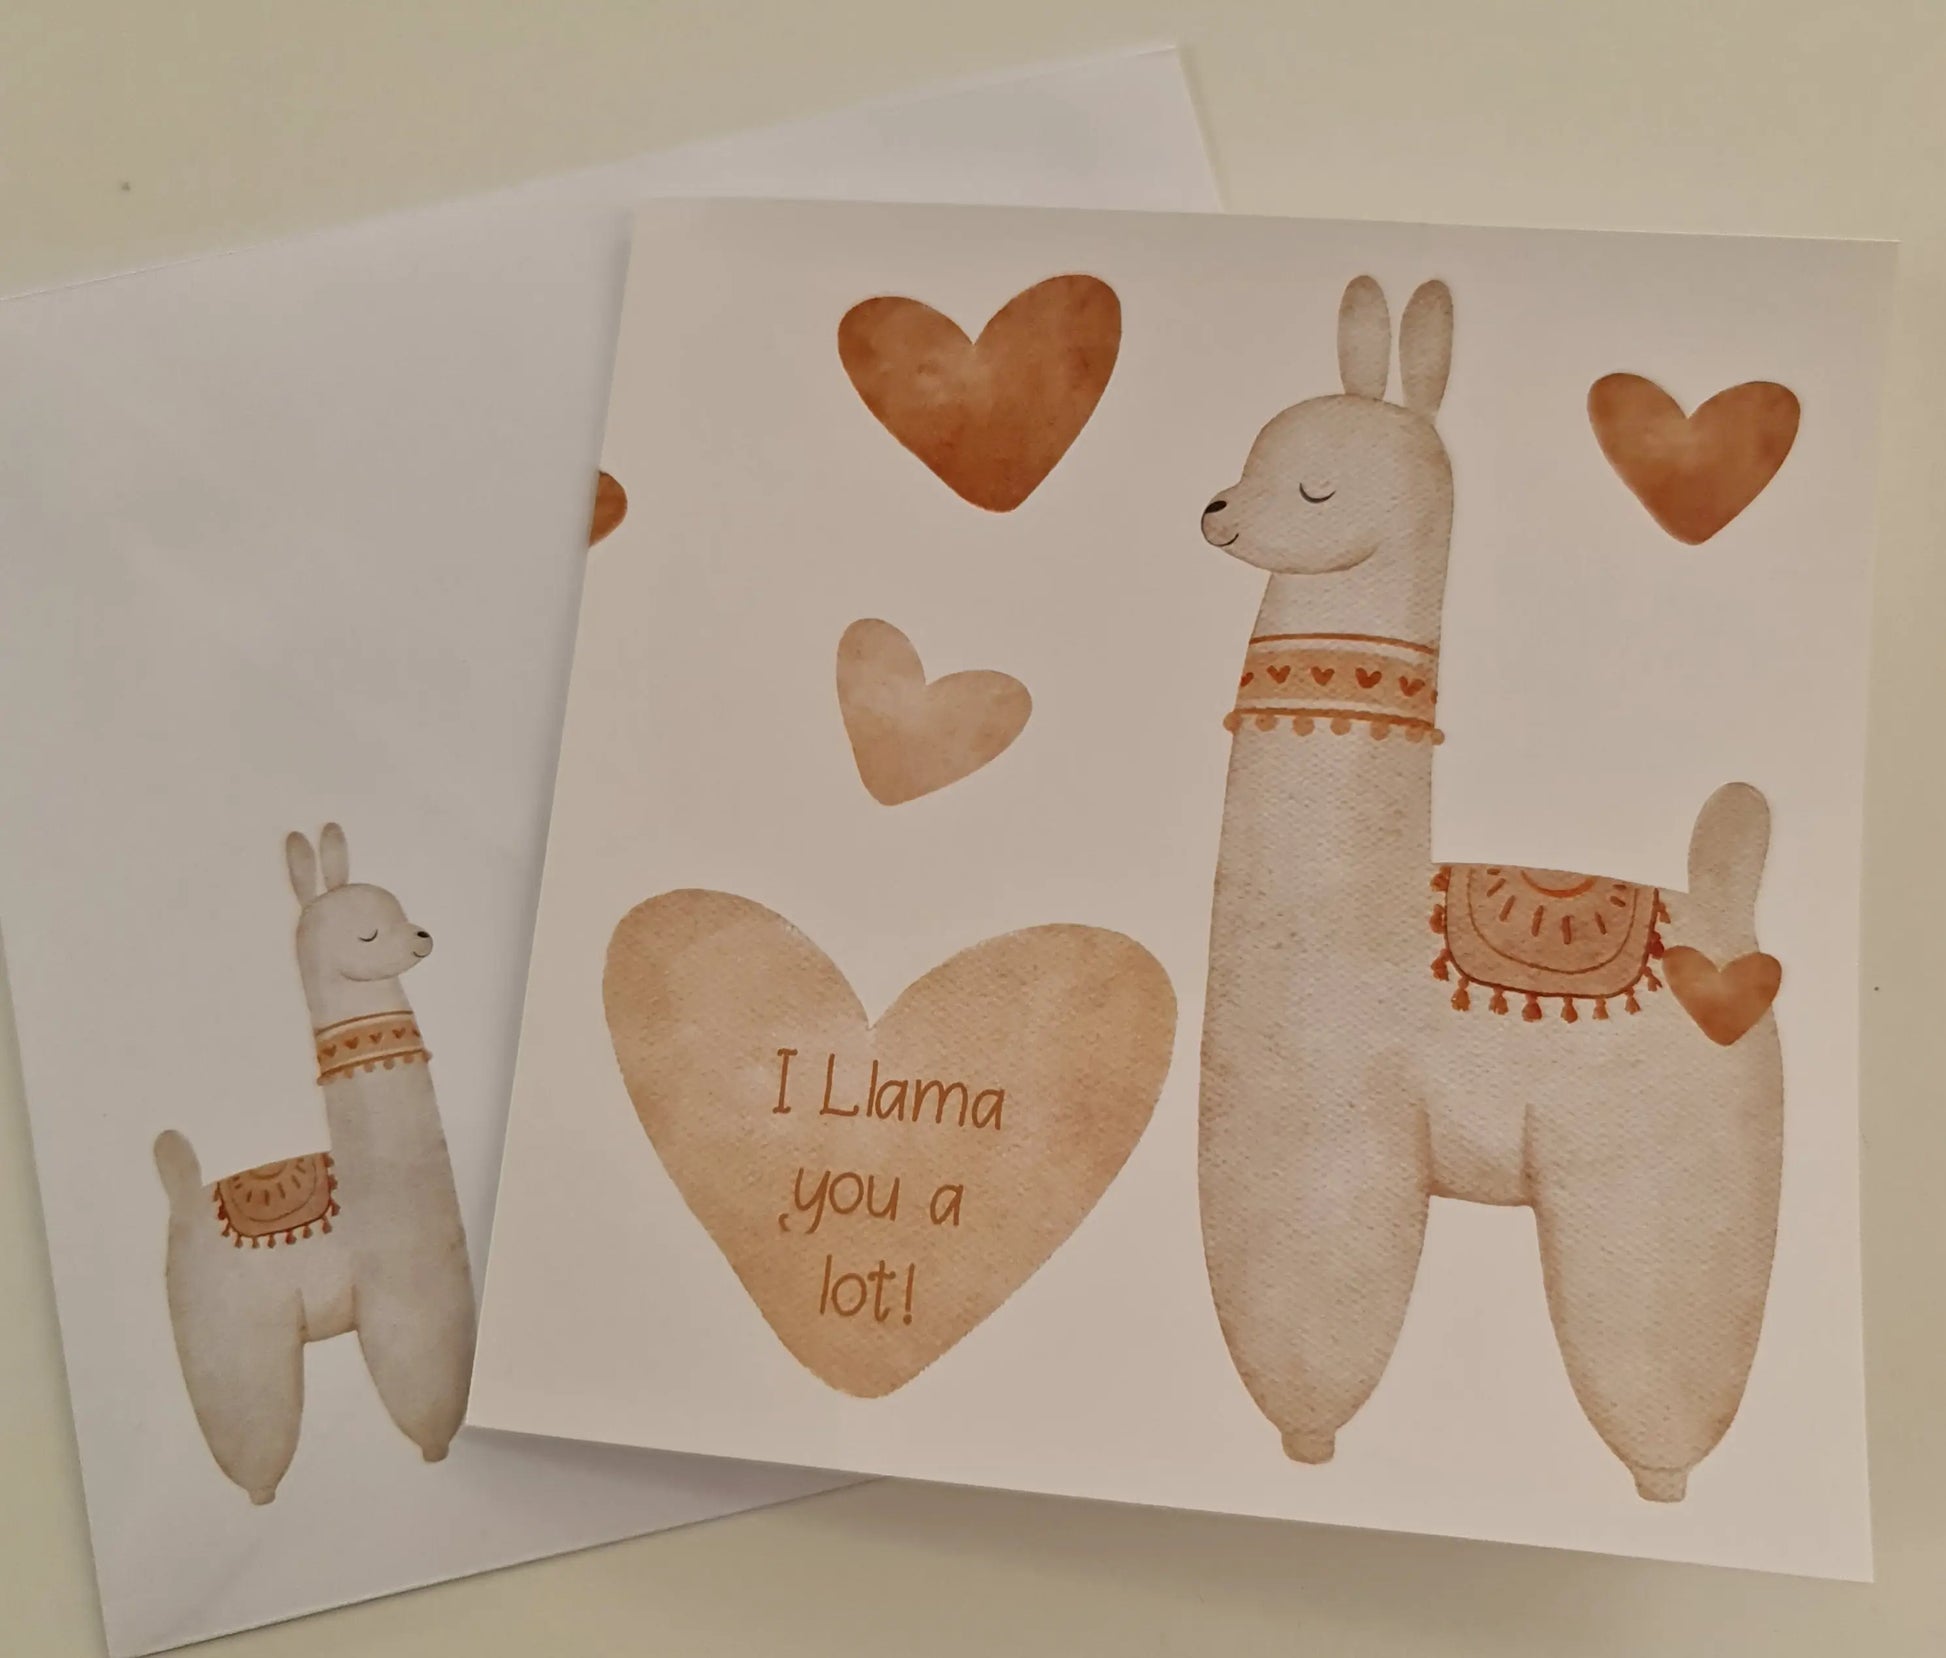 Boho Llama with Hearts - I Llama you a lot! Paper Love Cards